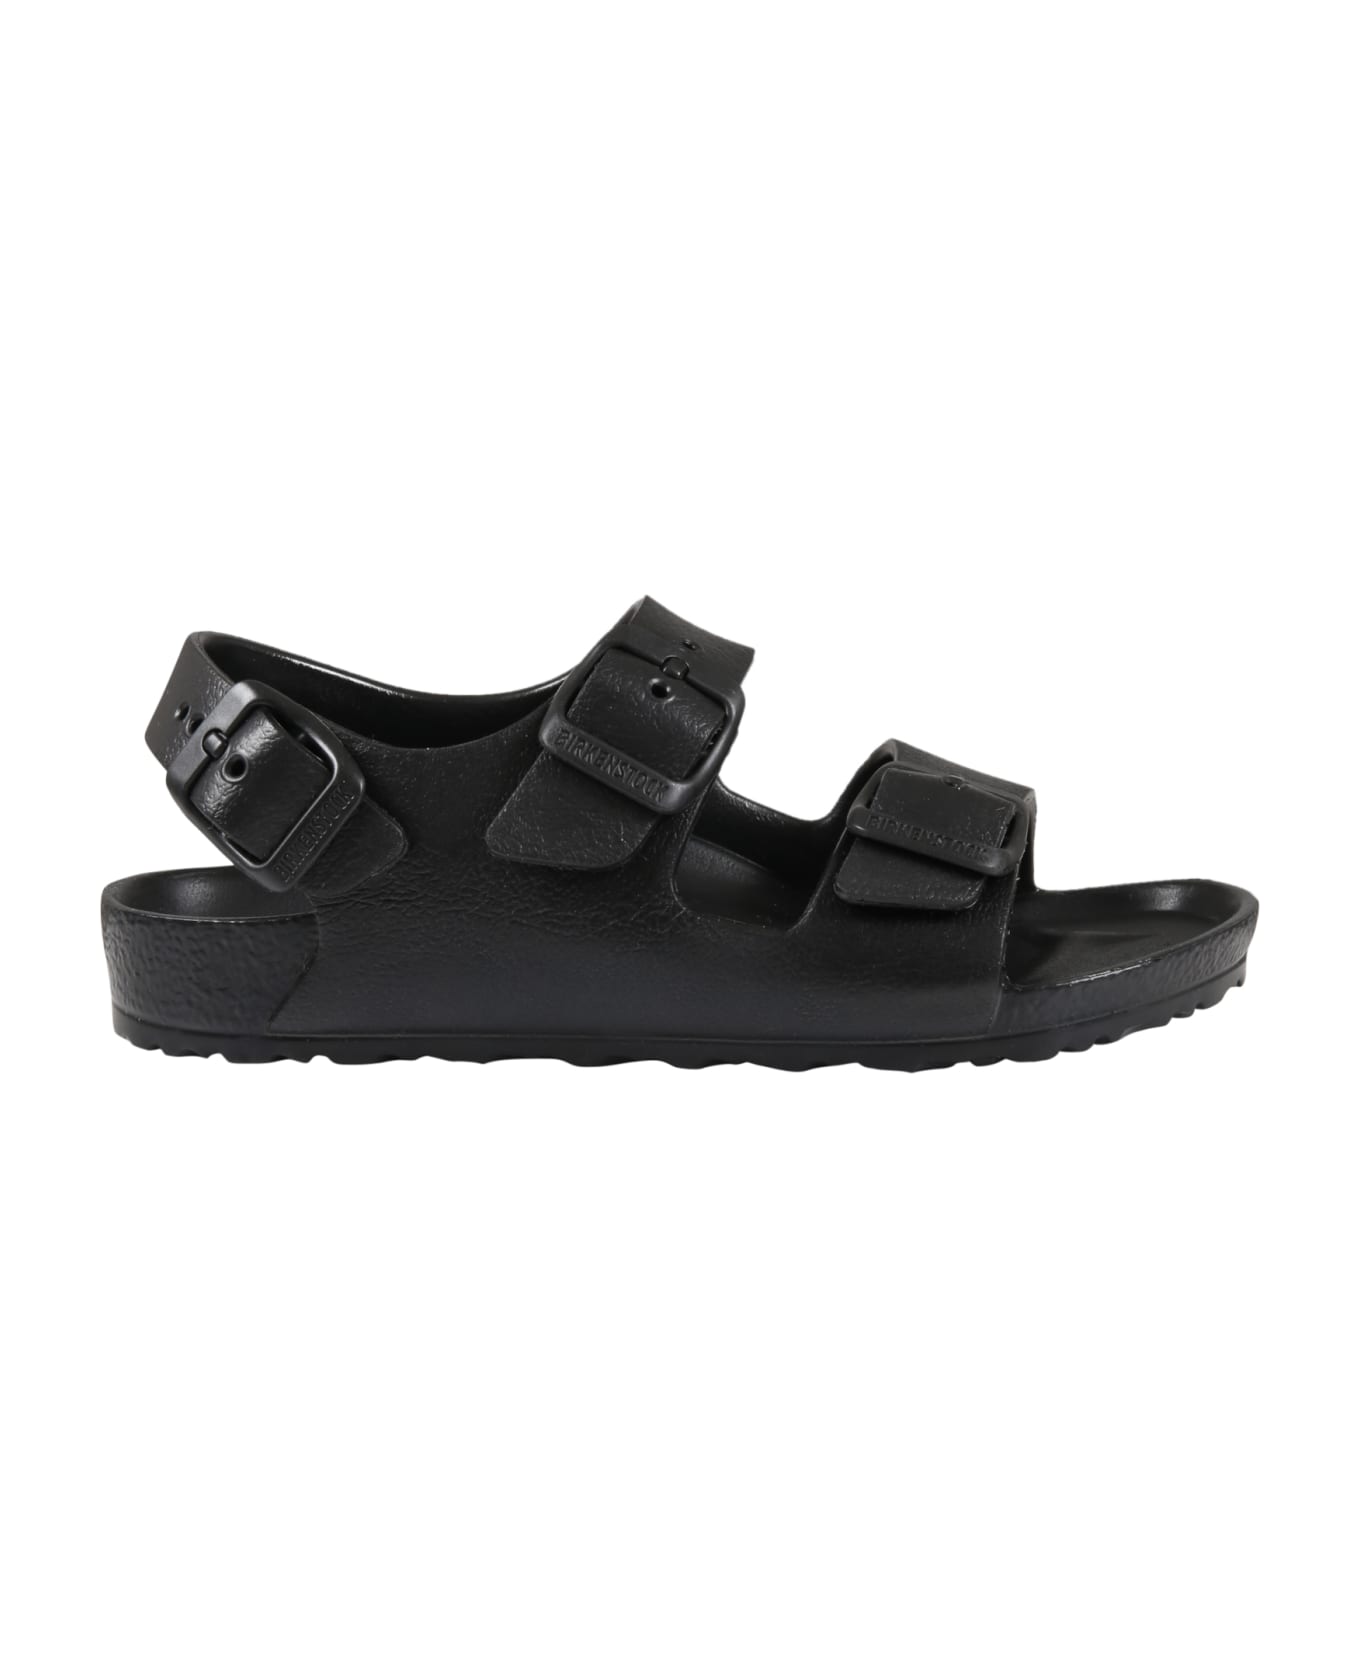 Birkenstock Black Sandals For Kids With Logo - Black